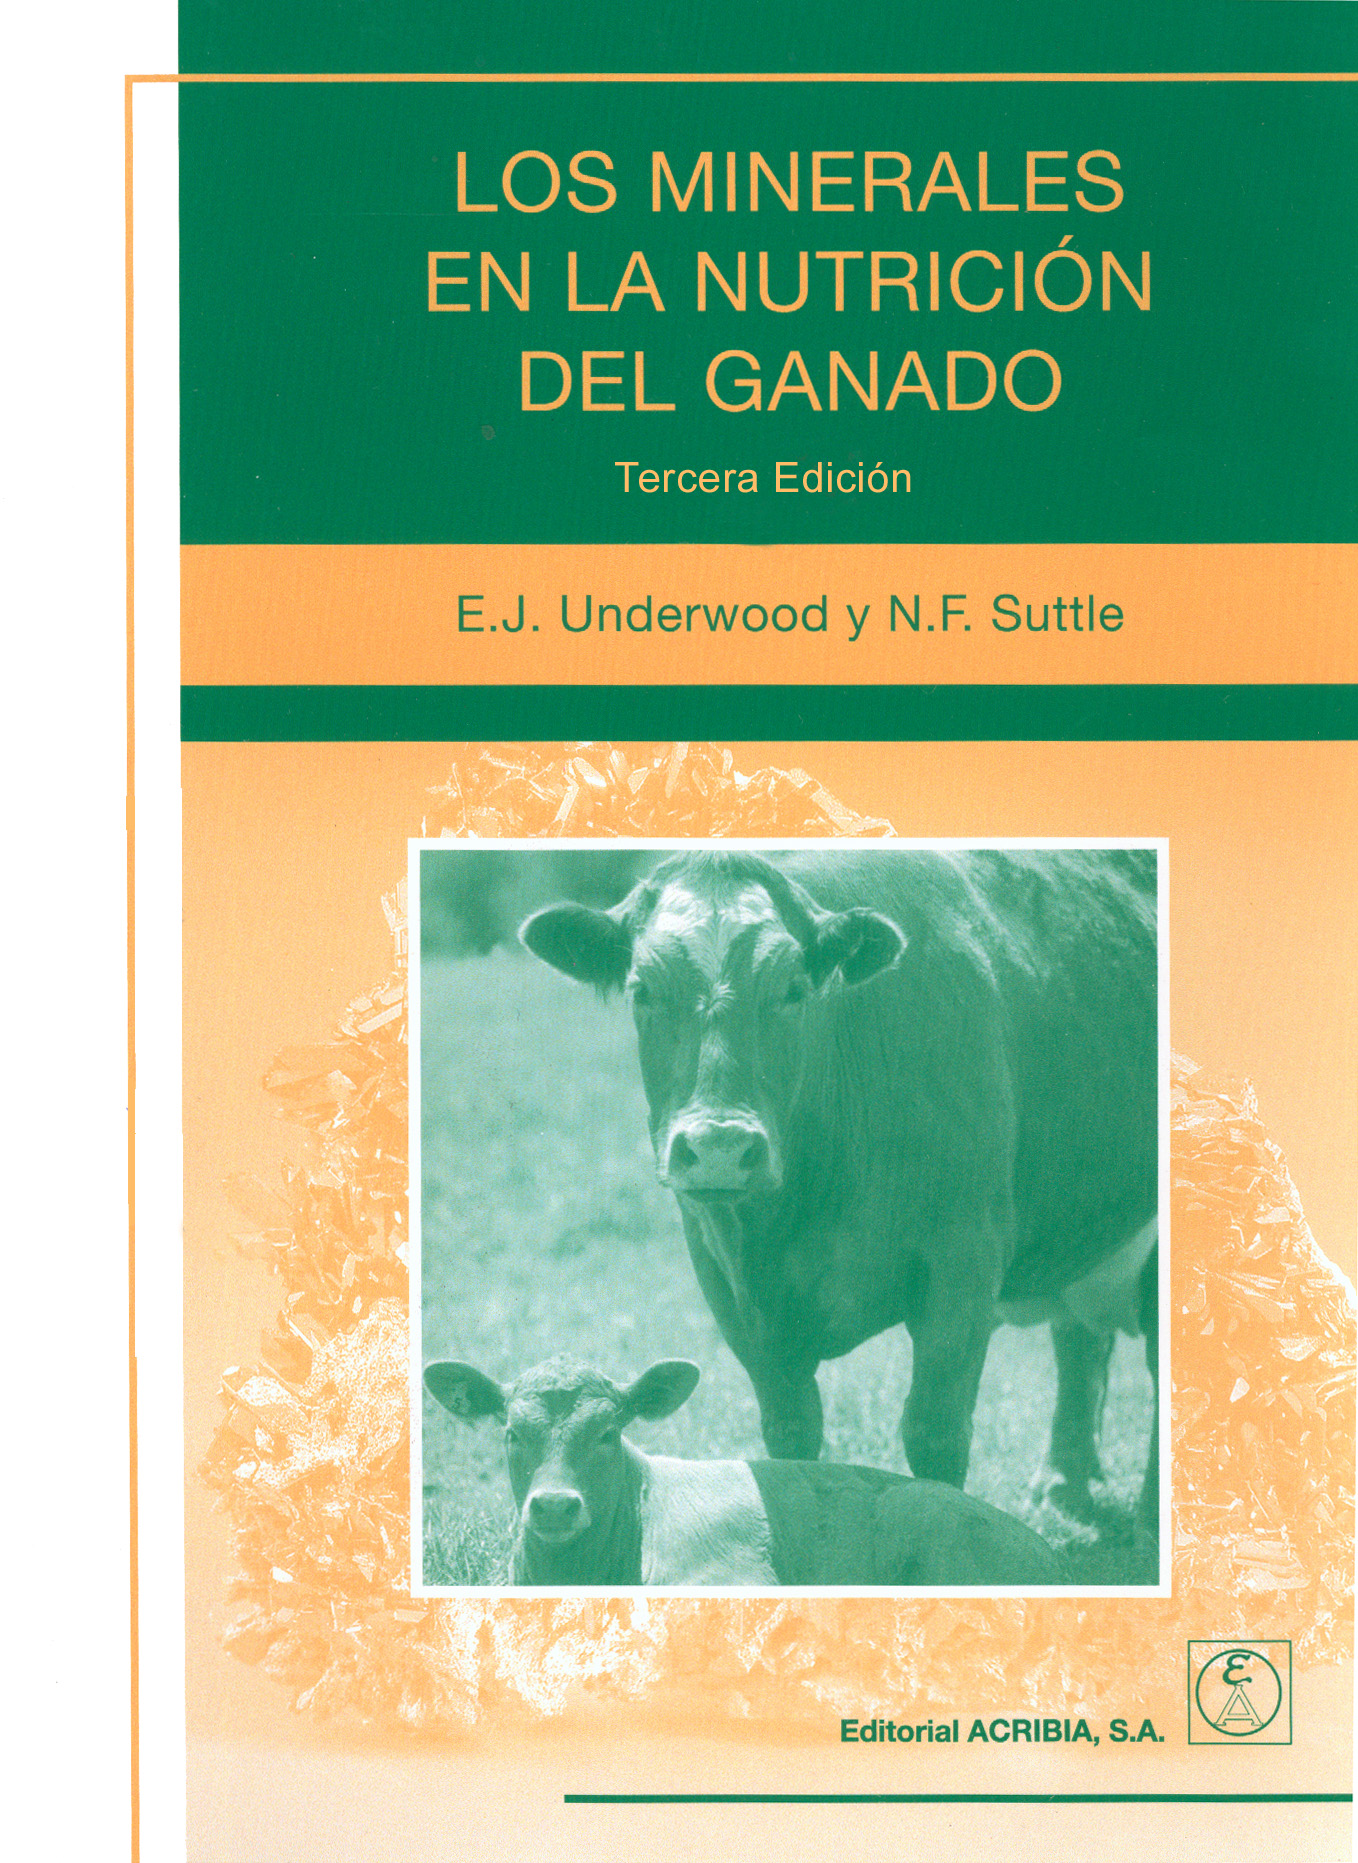 Los minerales en la nutrición del ganado - Editorial Acribia, .